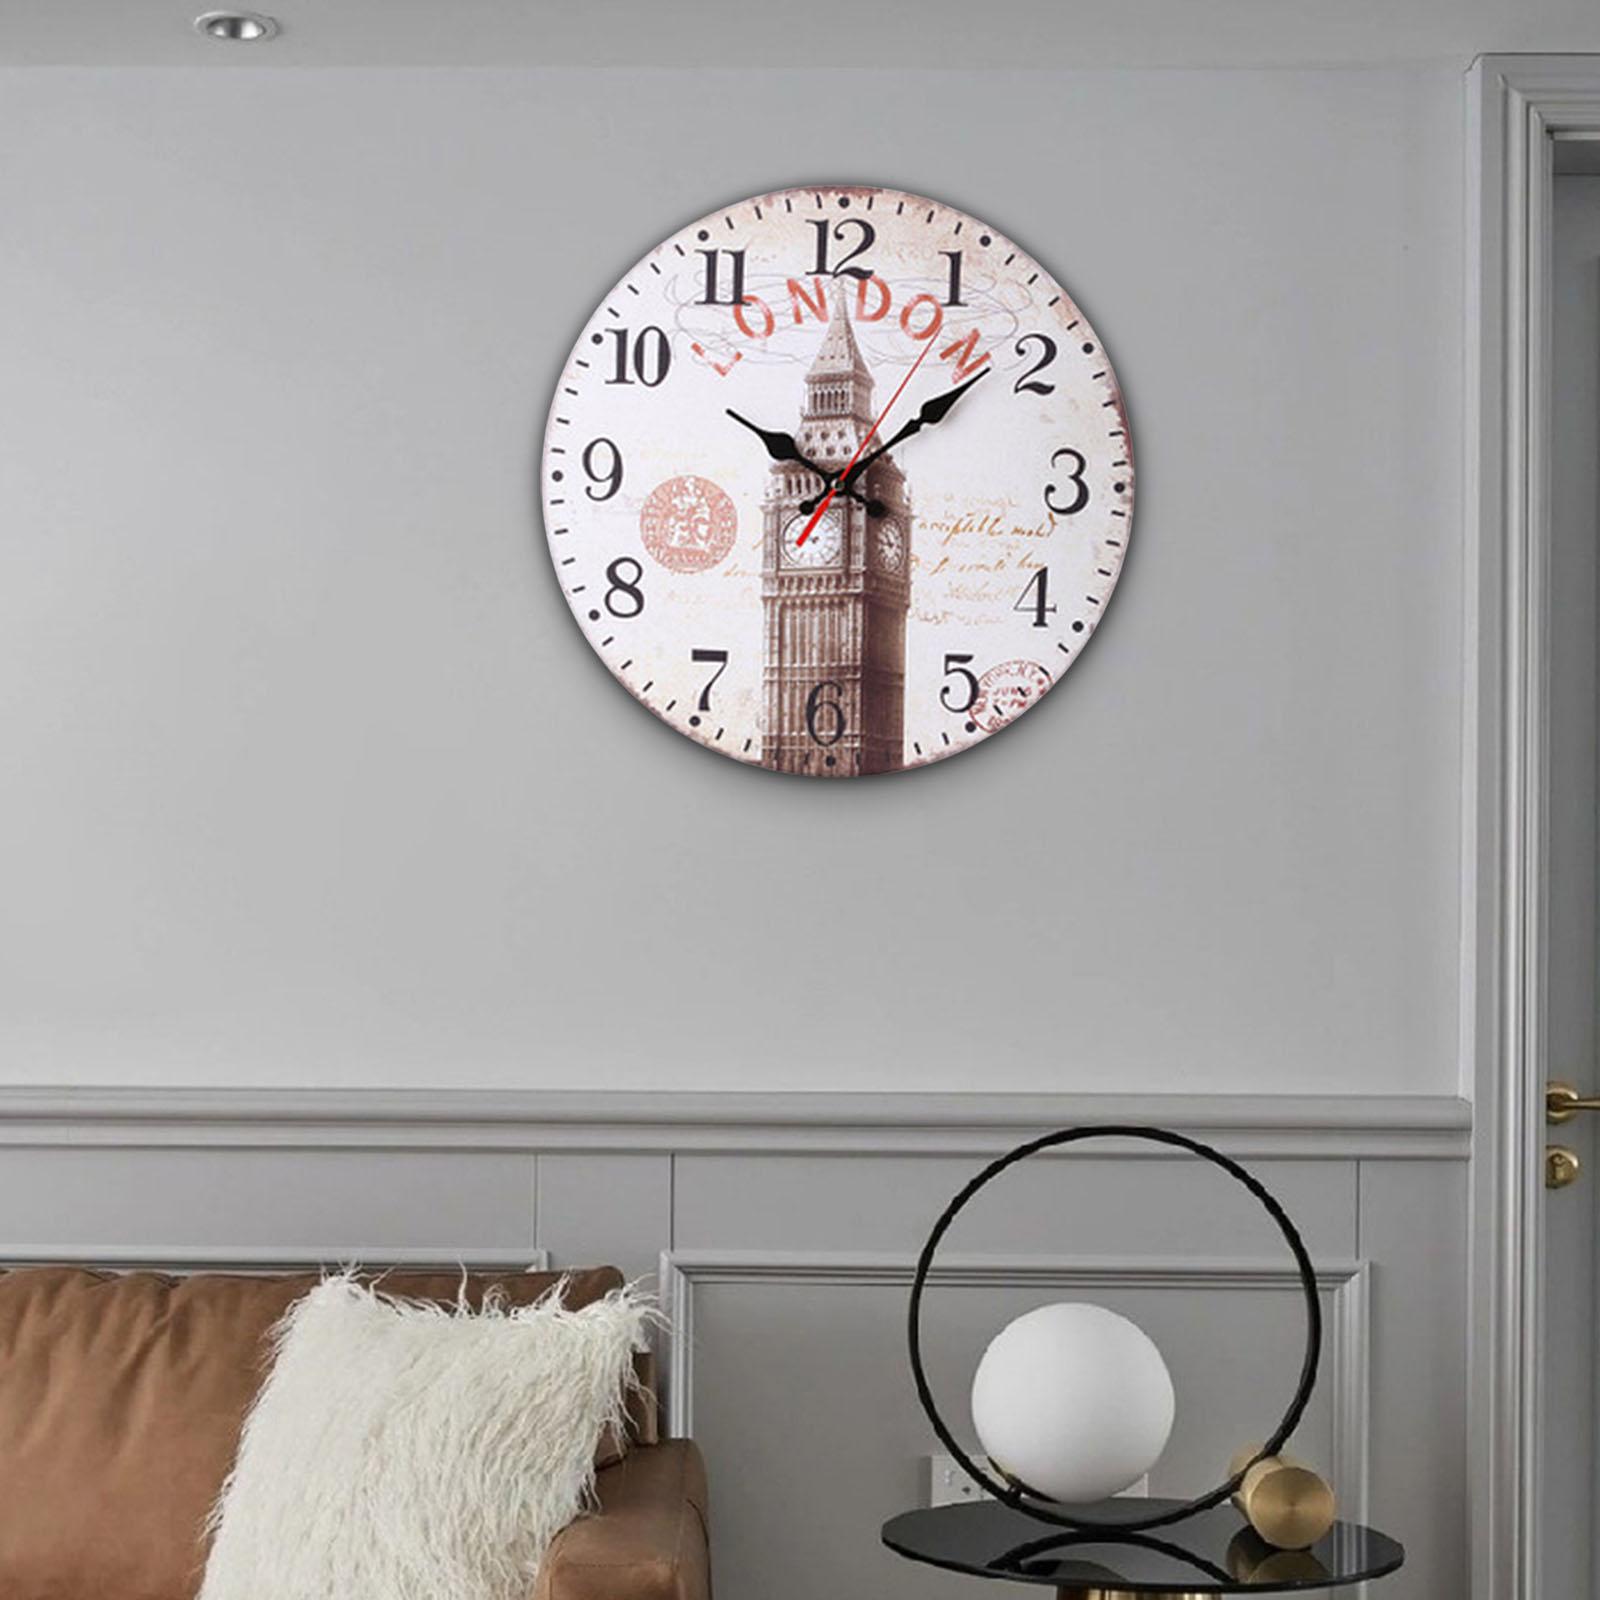 Wood Wall Clock 12inch Decorative Quartz Clocks for Bedroom Living Room Home E